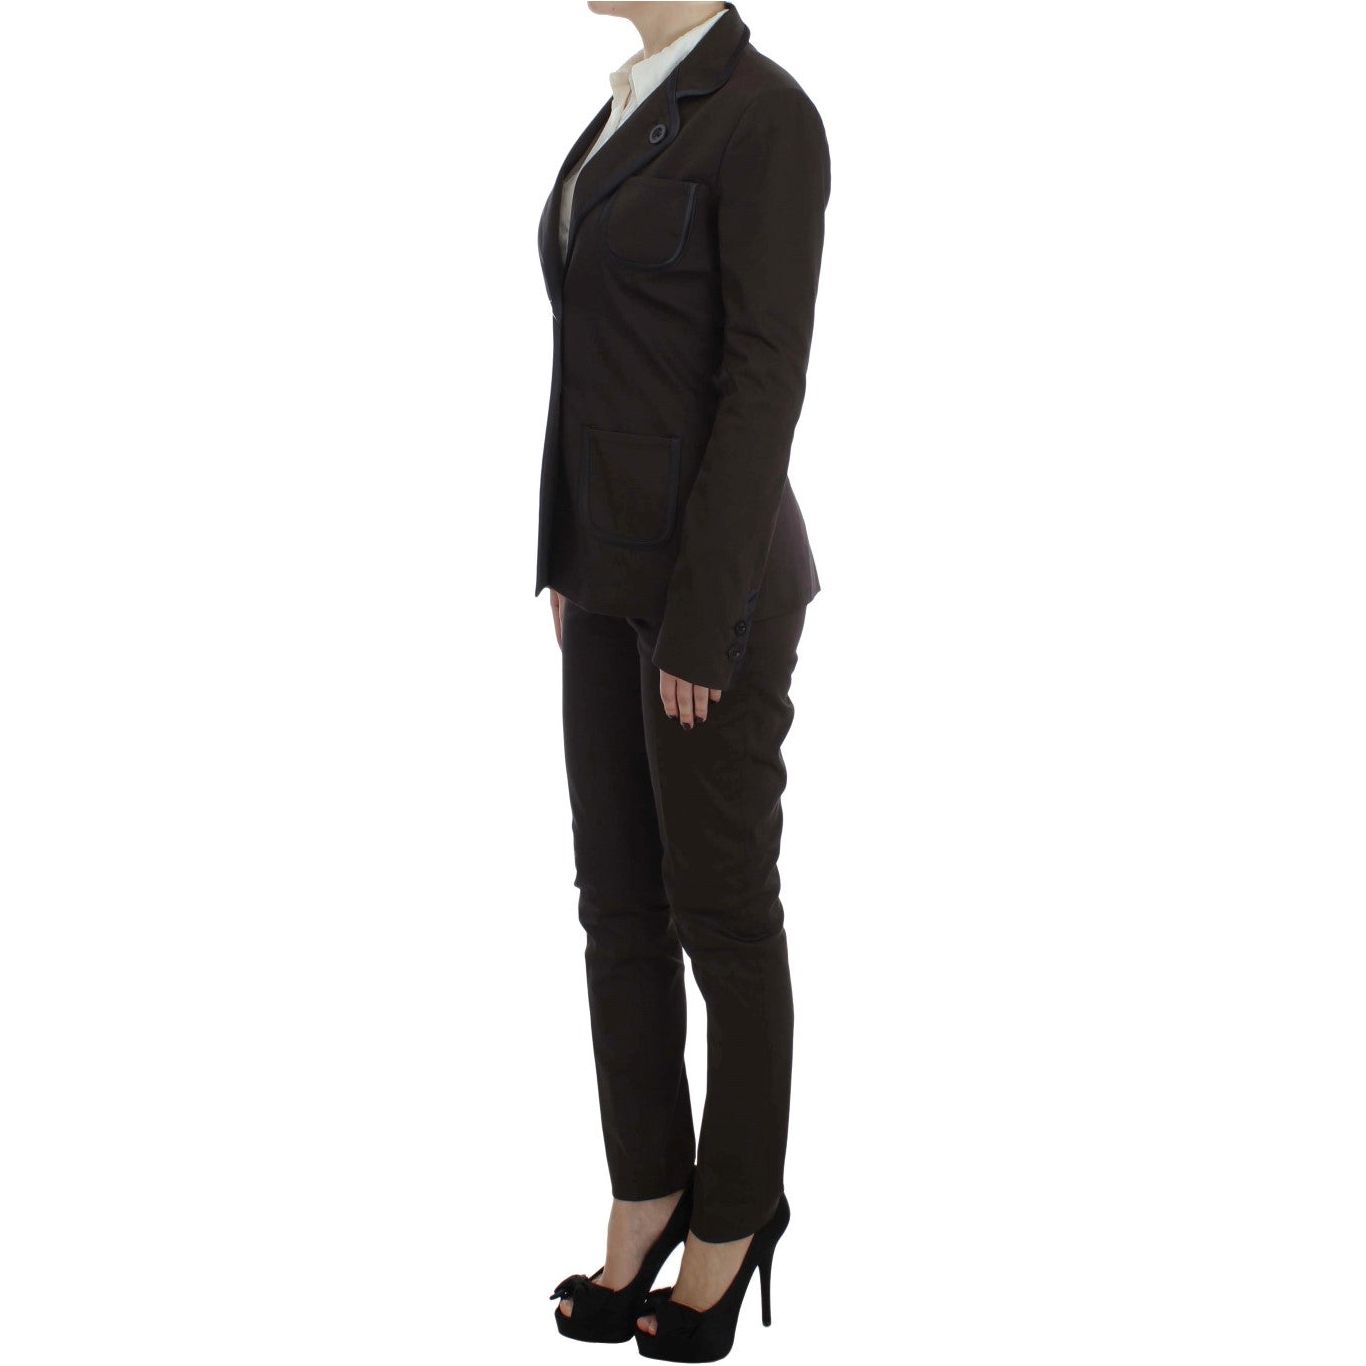 Exte Chic Brown Cotton-Elastane Suit Set Suit brown-stretch-two-button-suit